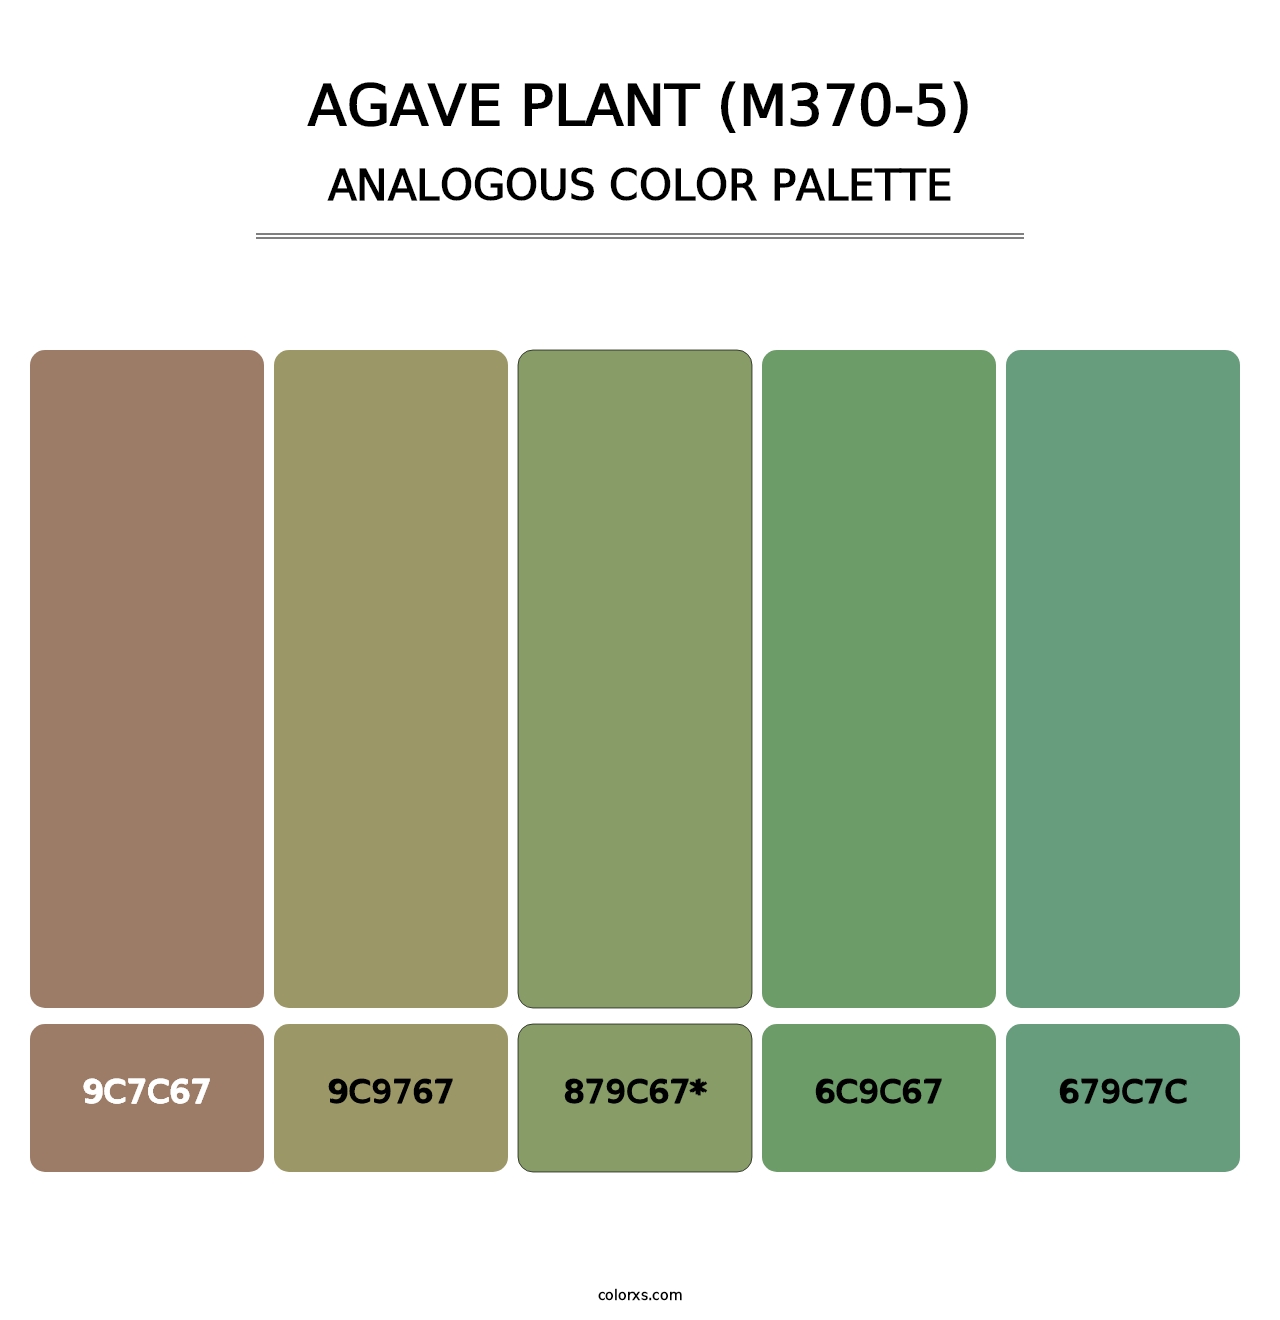 Agave Plant (M370-5) - Analogous Color Palette